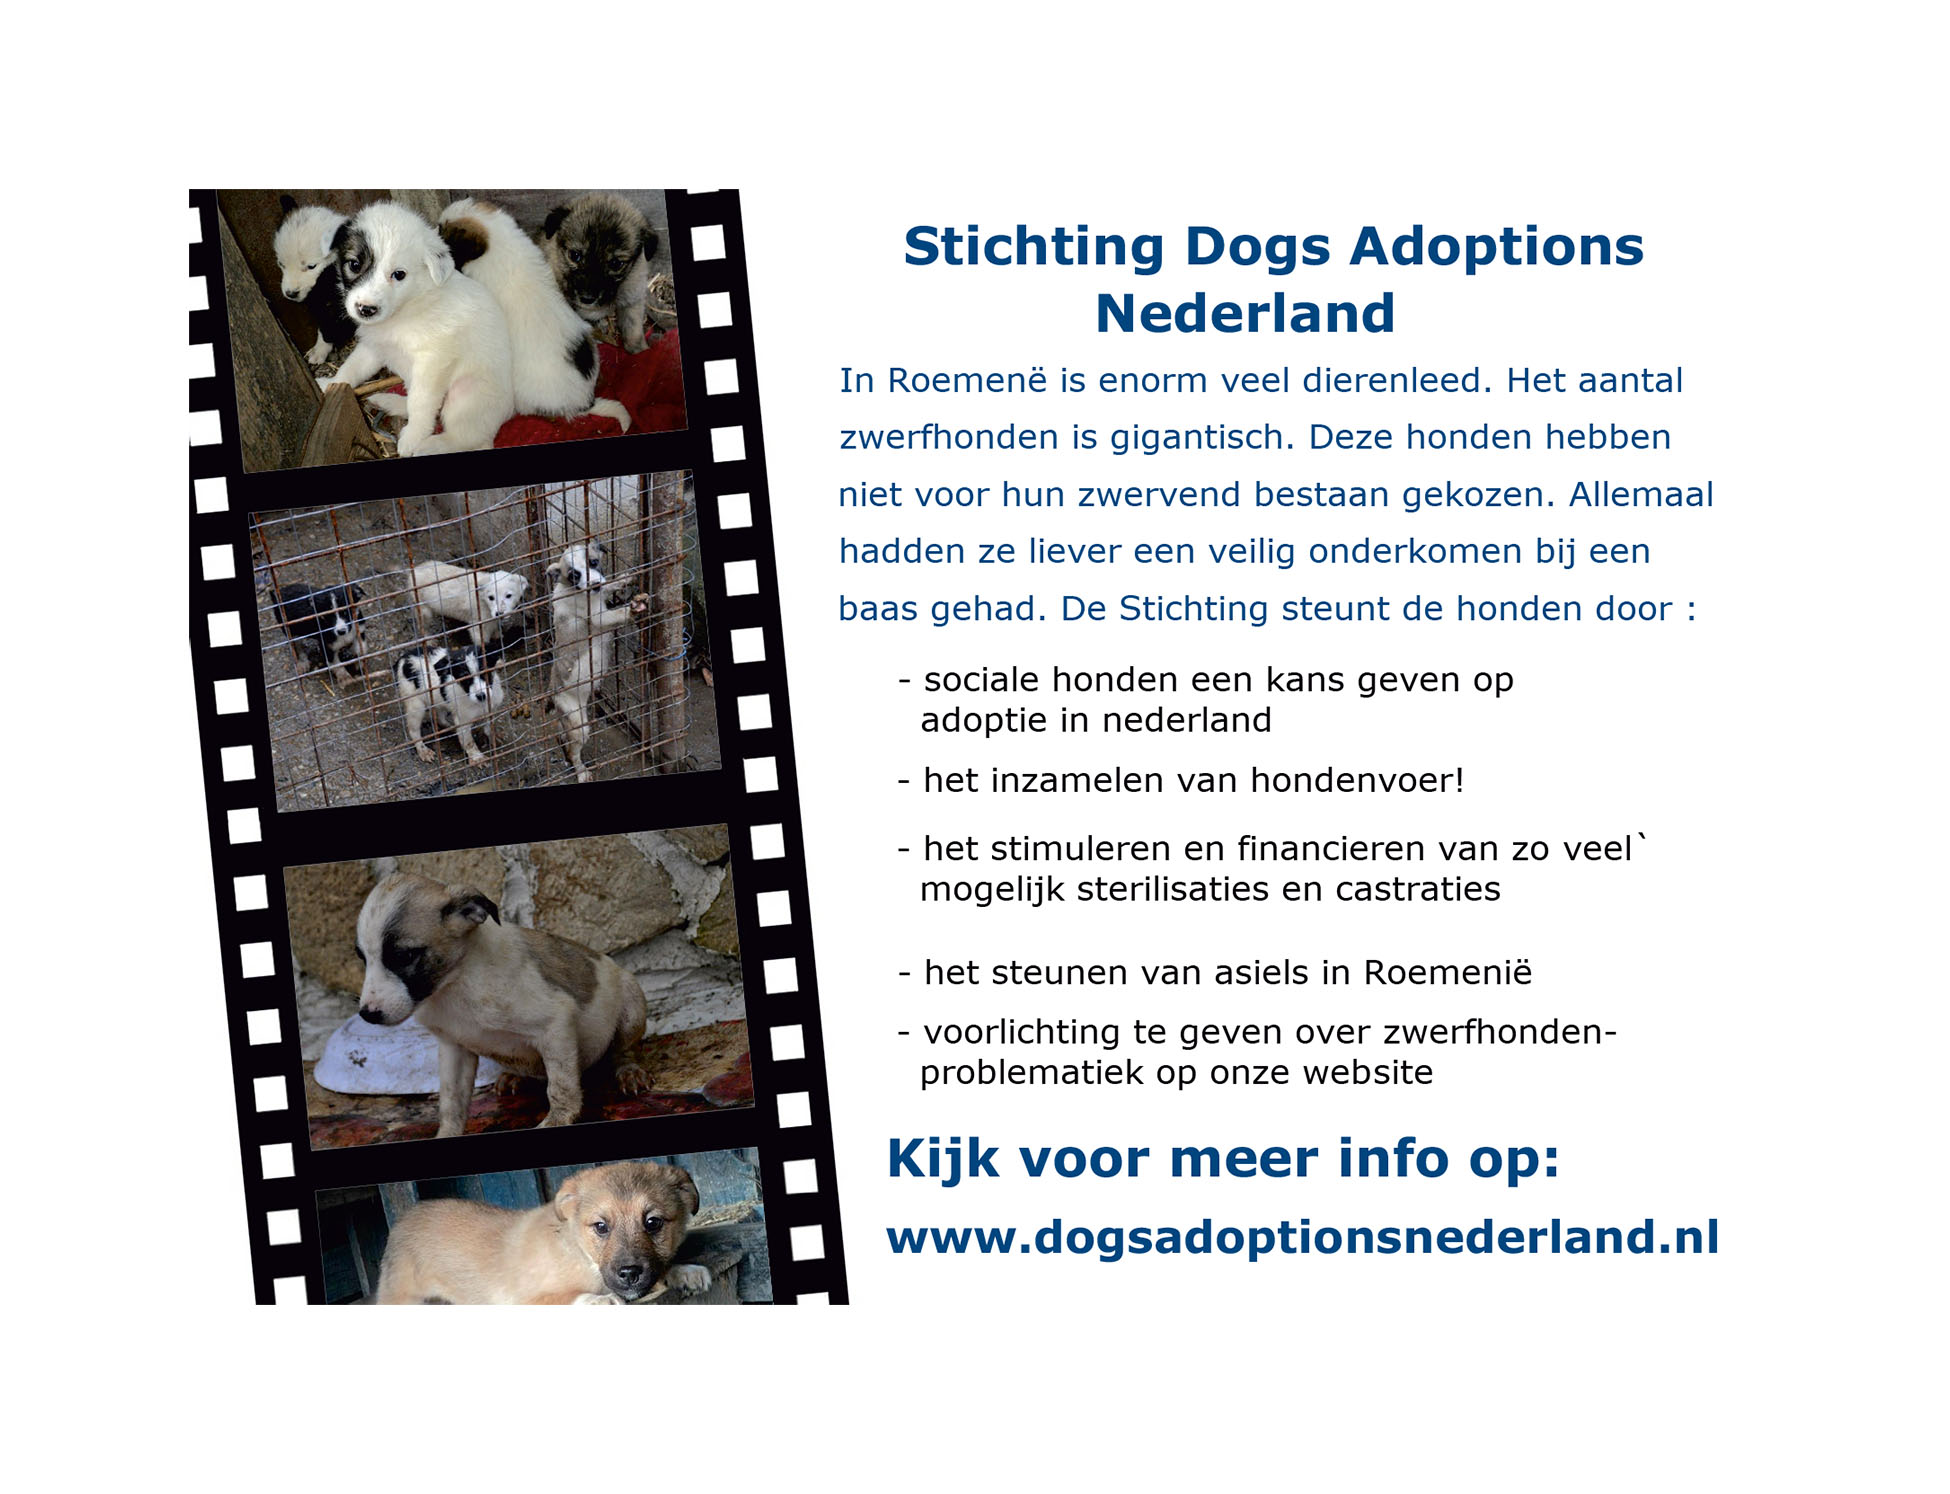 Dogs Adoptions Nederland